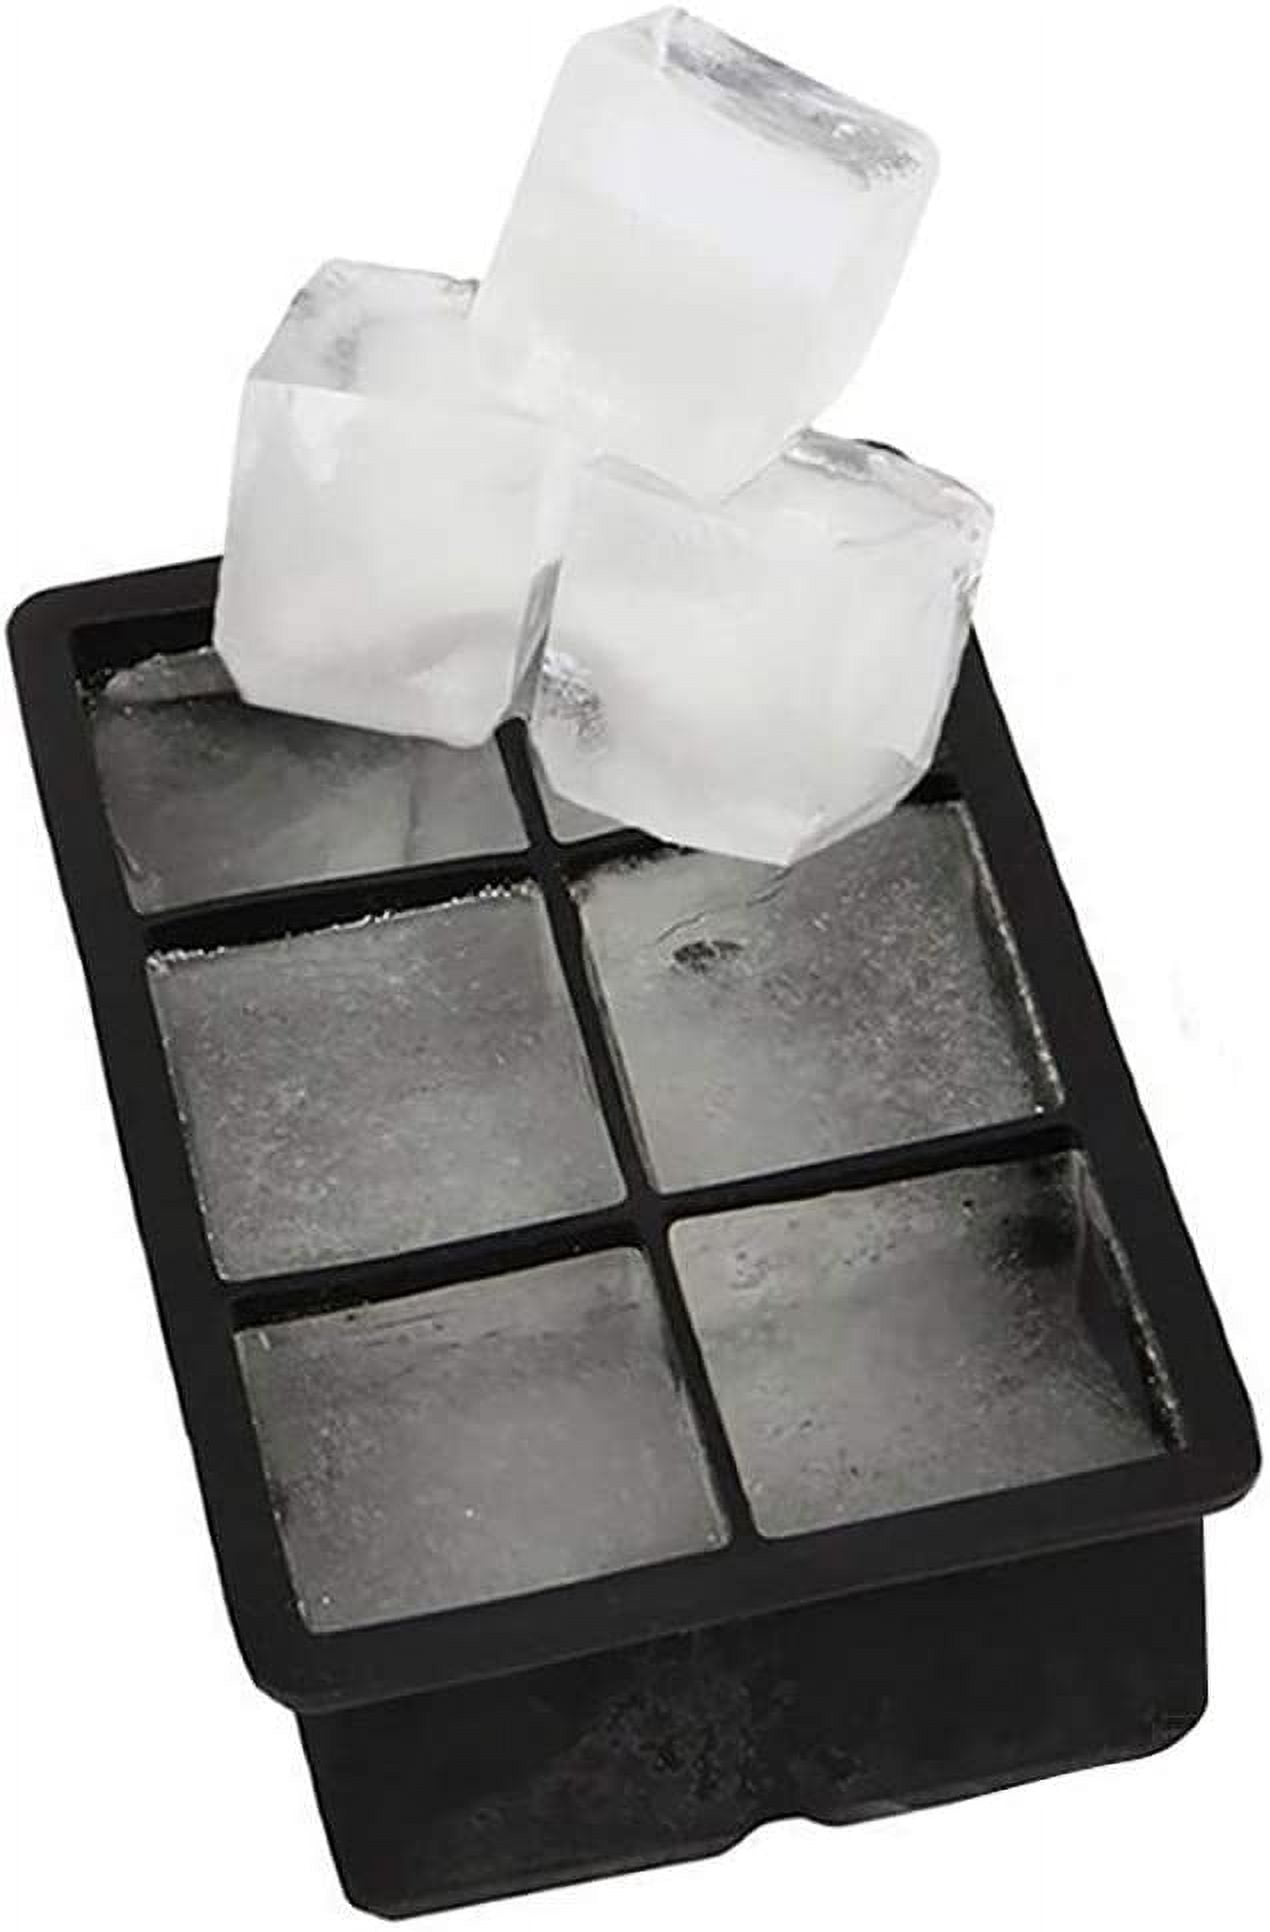 FDA Eco-Friendly 8 Cavity Silicone Santa Tree Ice Cube Mold - China Ice  Cube Tray Mold and Silicone Ice Cube Tray price